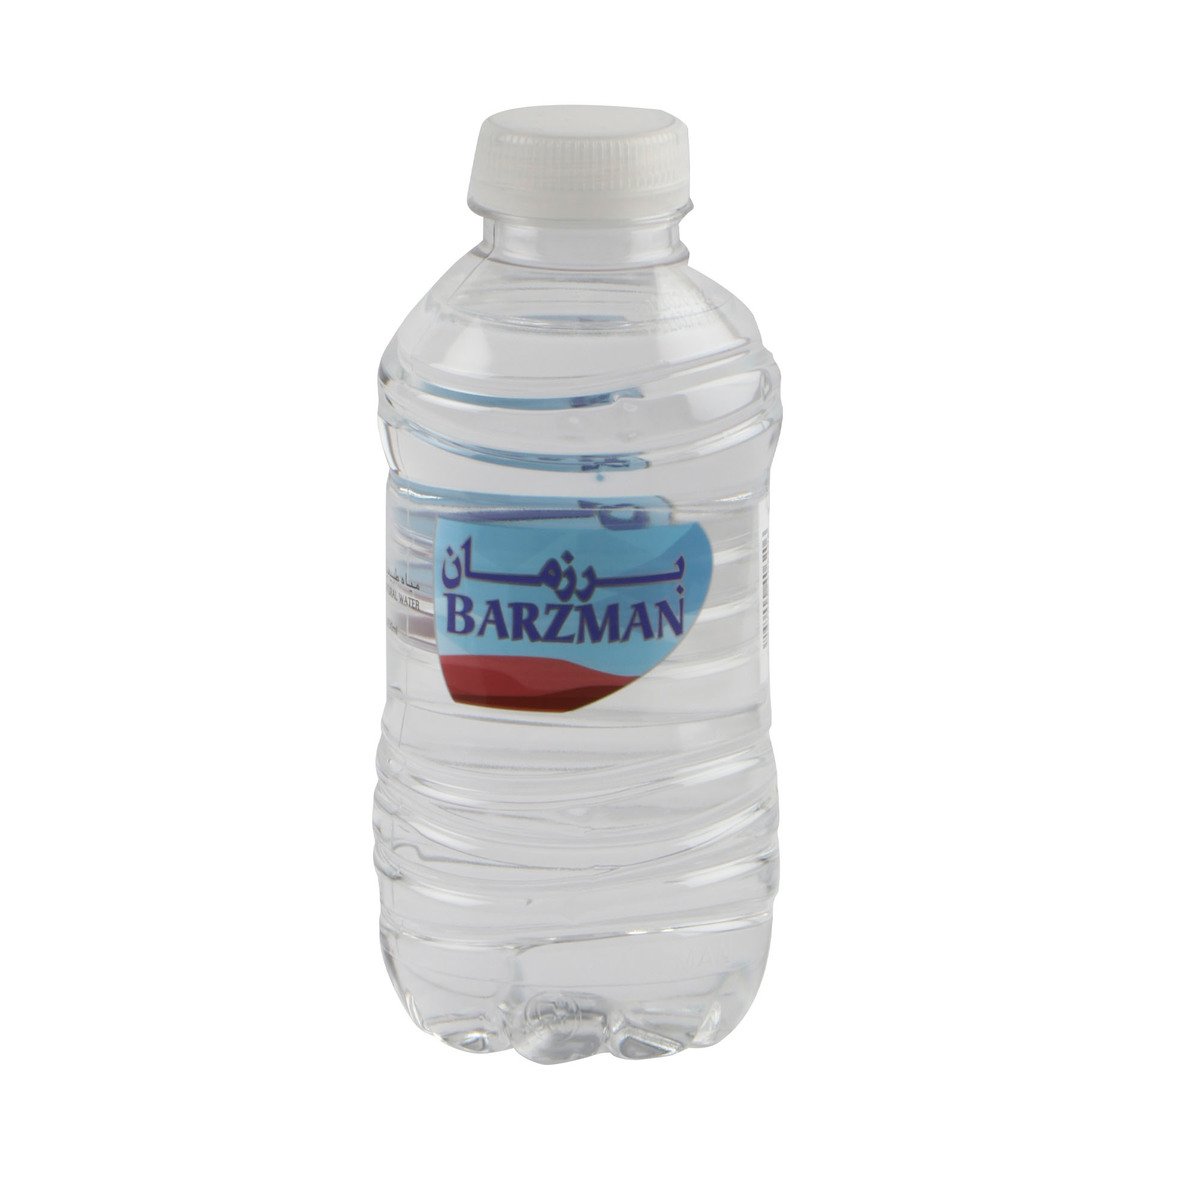 Barzman pure Natural Water 30 x 250ml